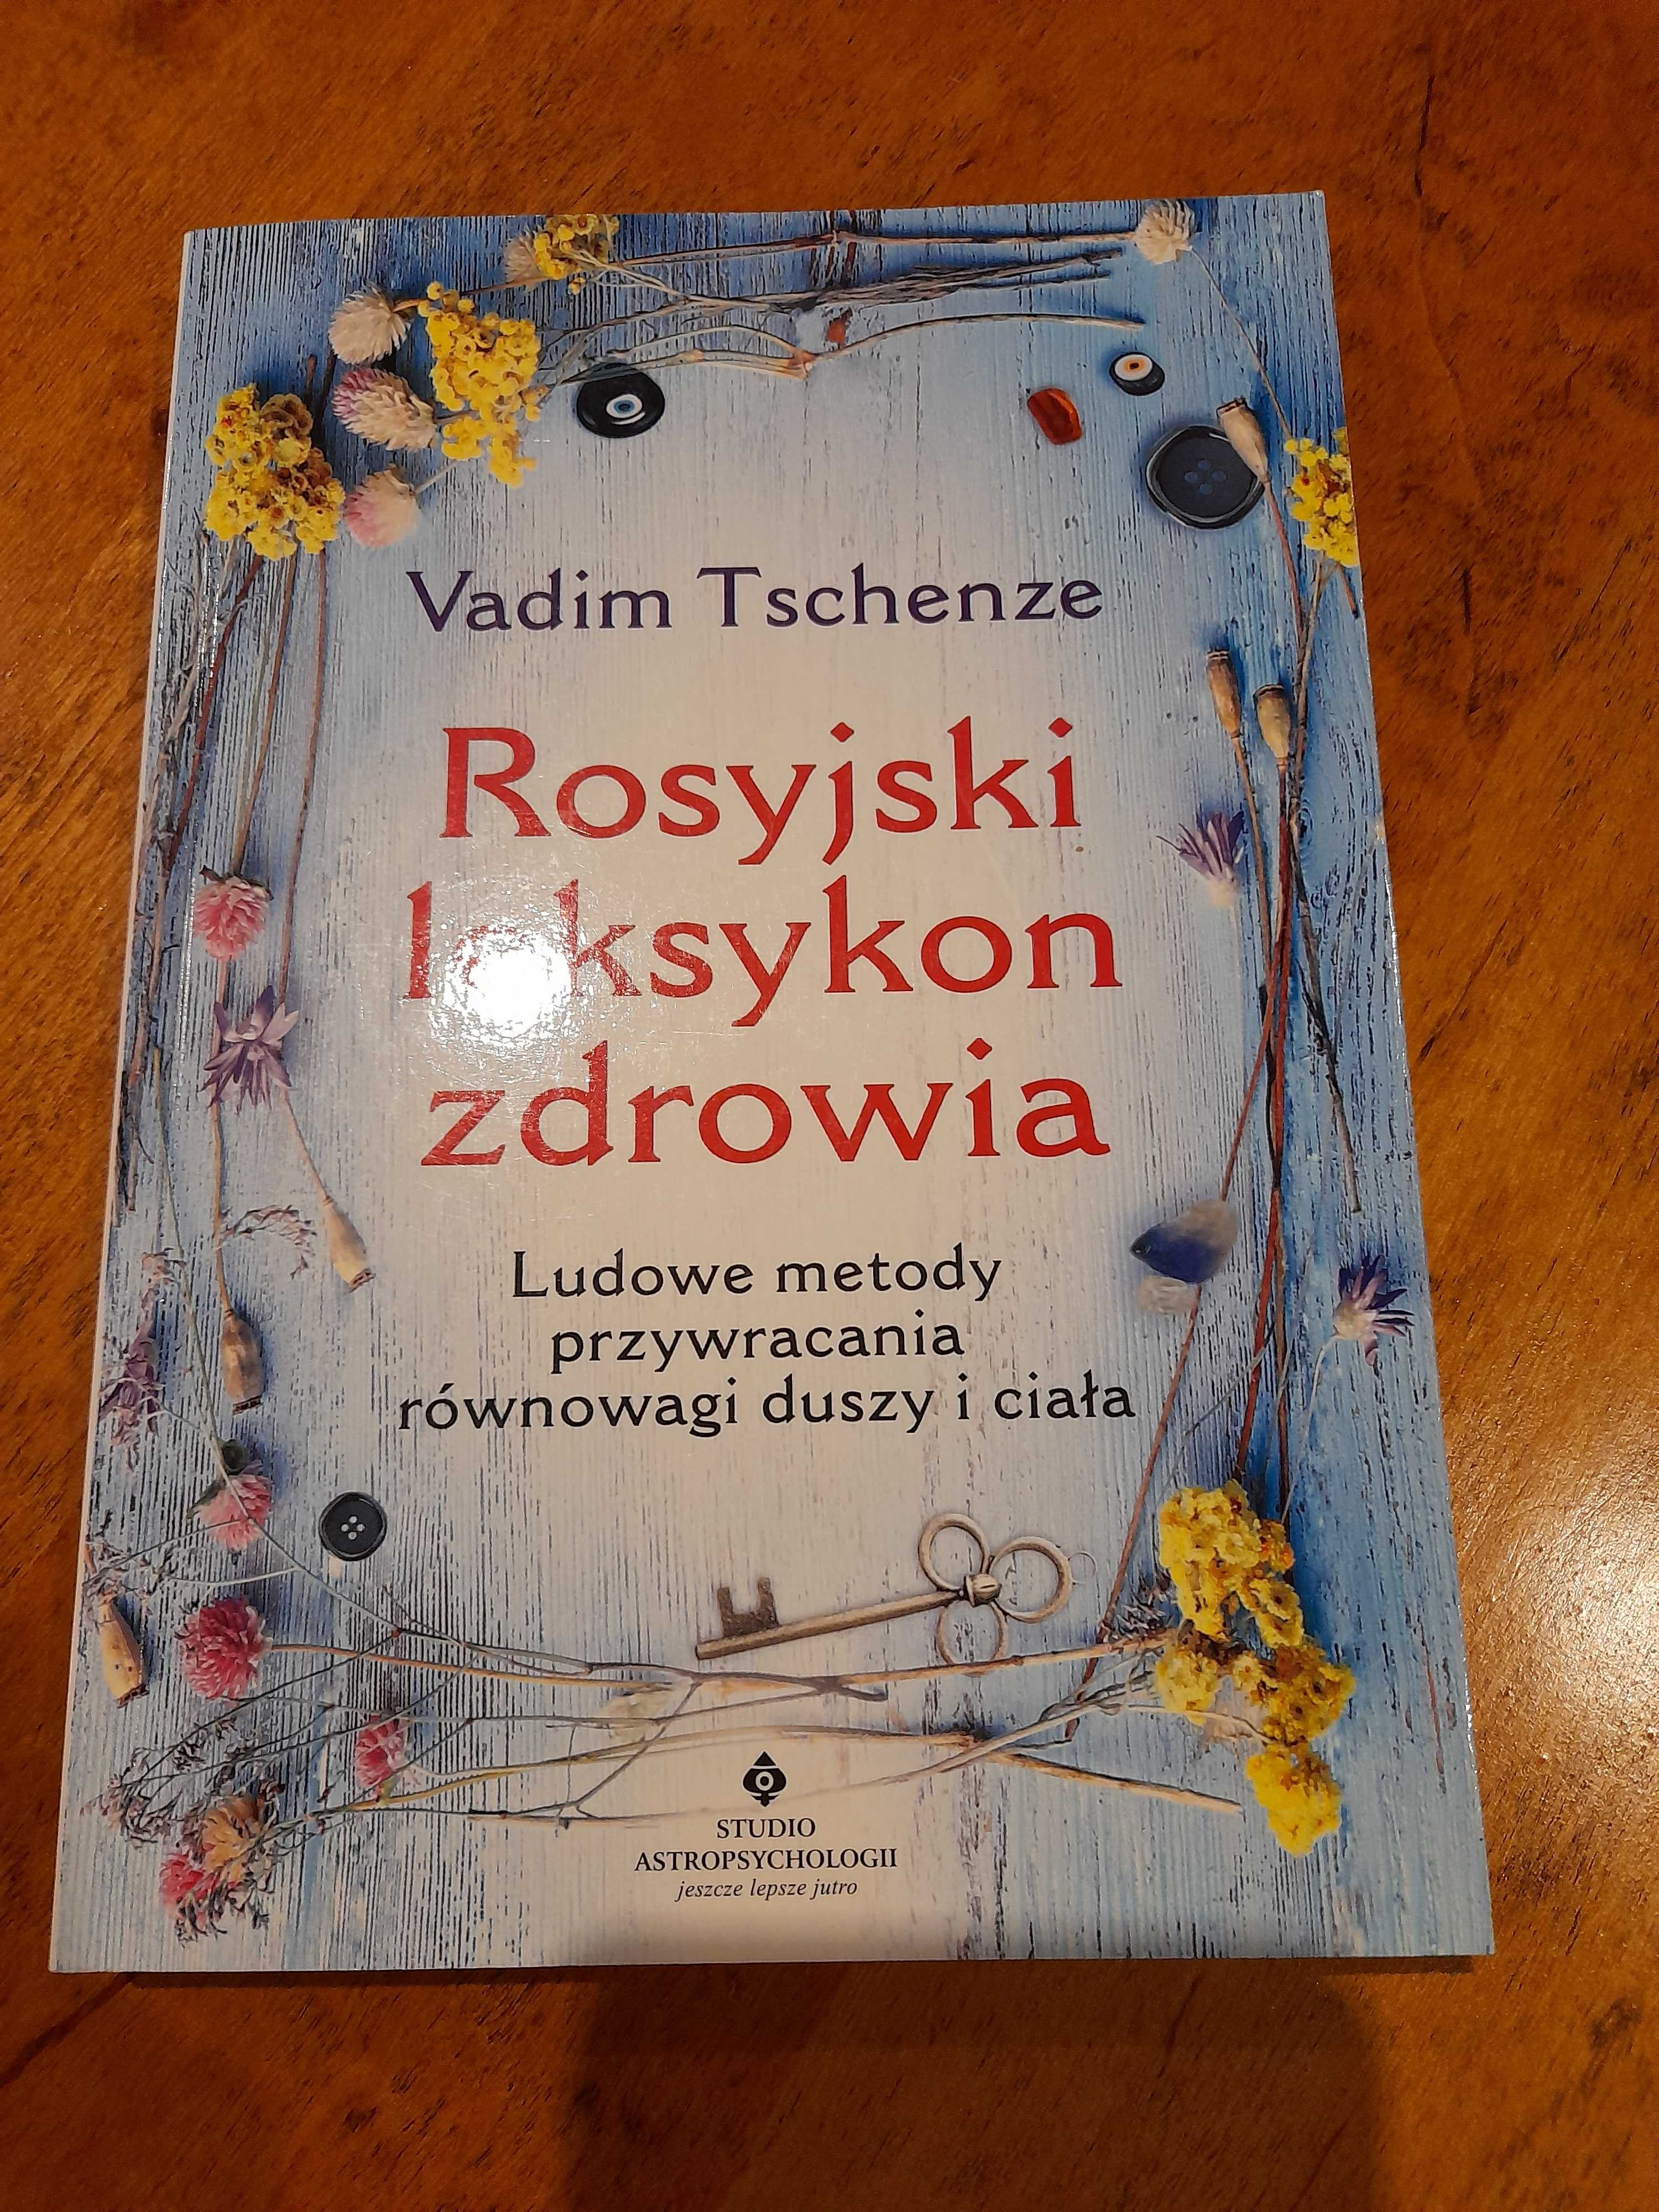 Rosyjski leksykon zdrowia, Vadim Tschenze, książka nowa!